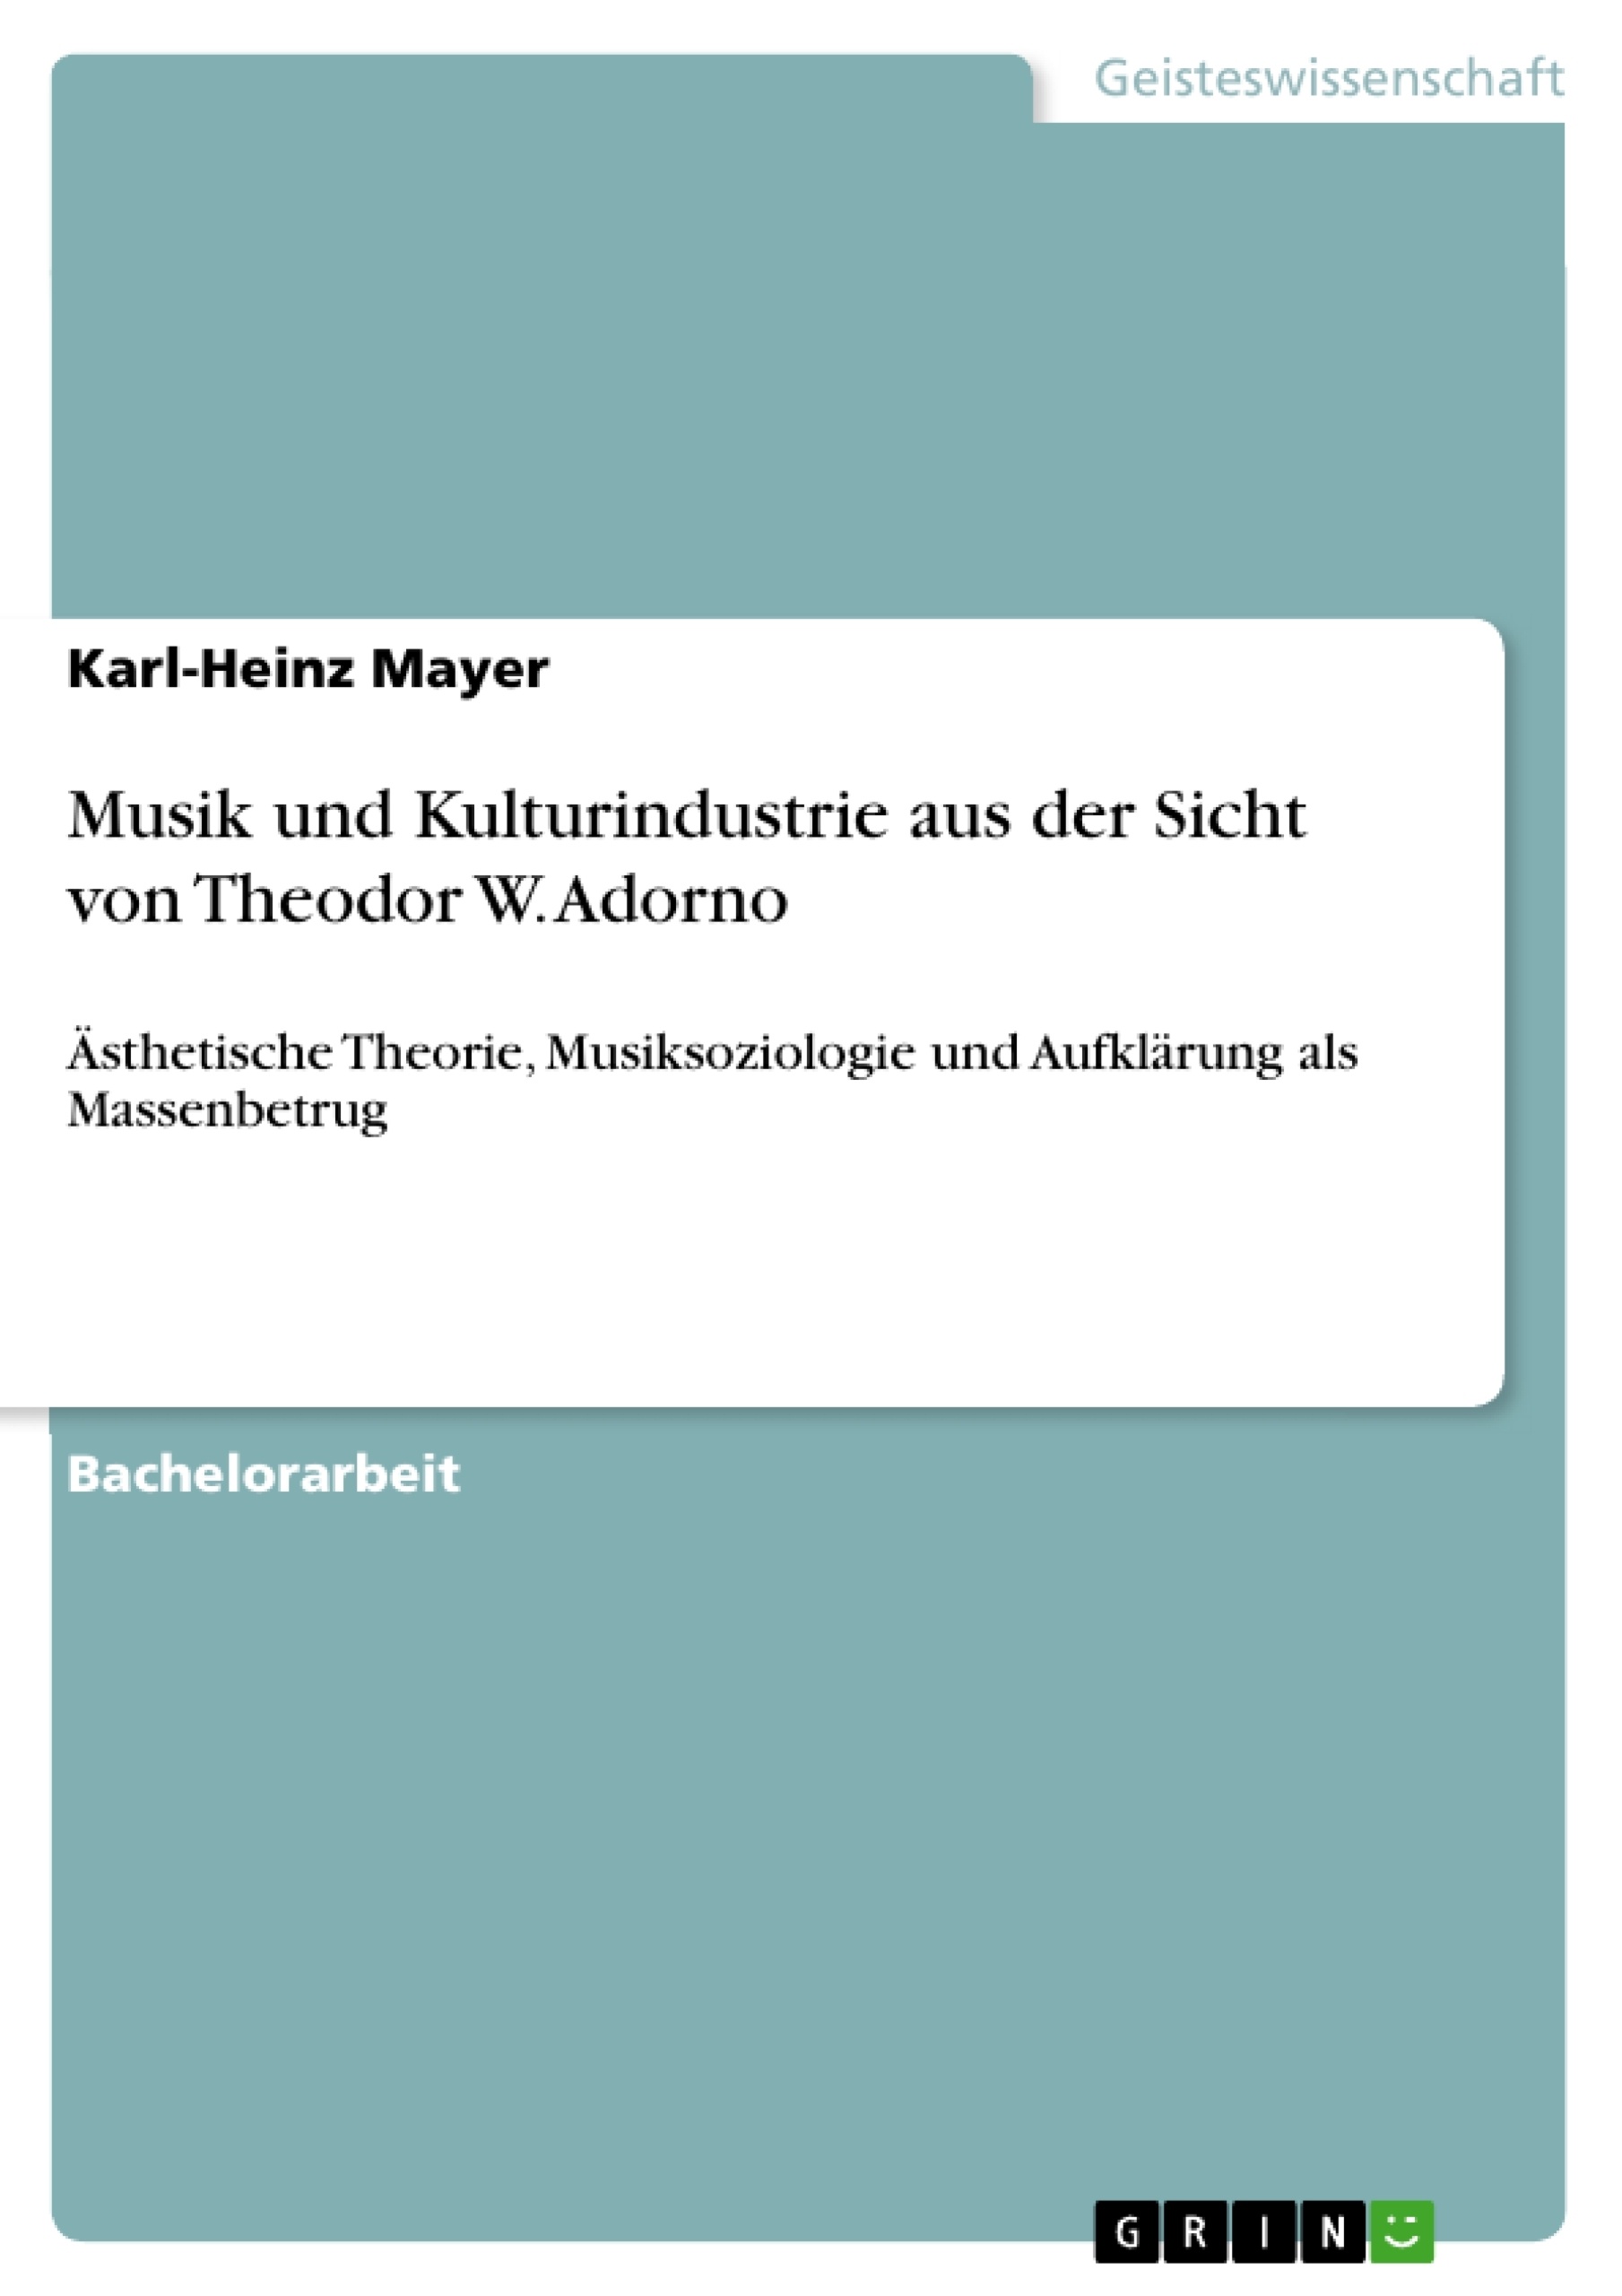 Título: Musik und Kulturindustrie aus der Sicht von Theodor W. Adorno